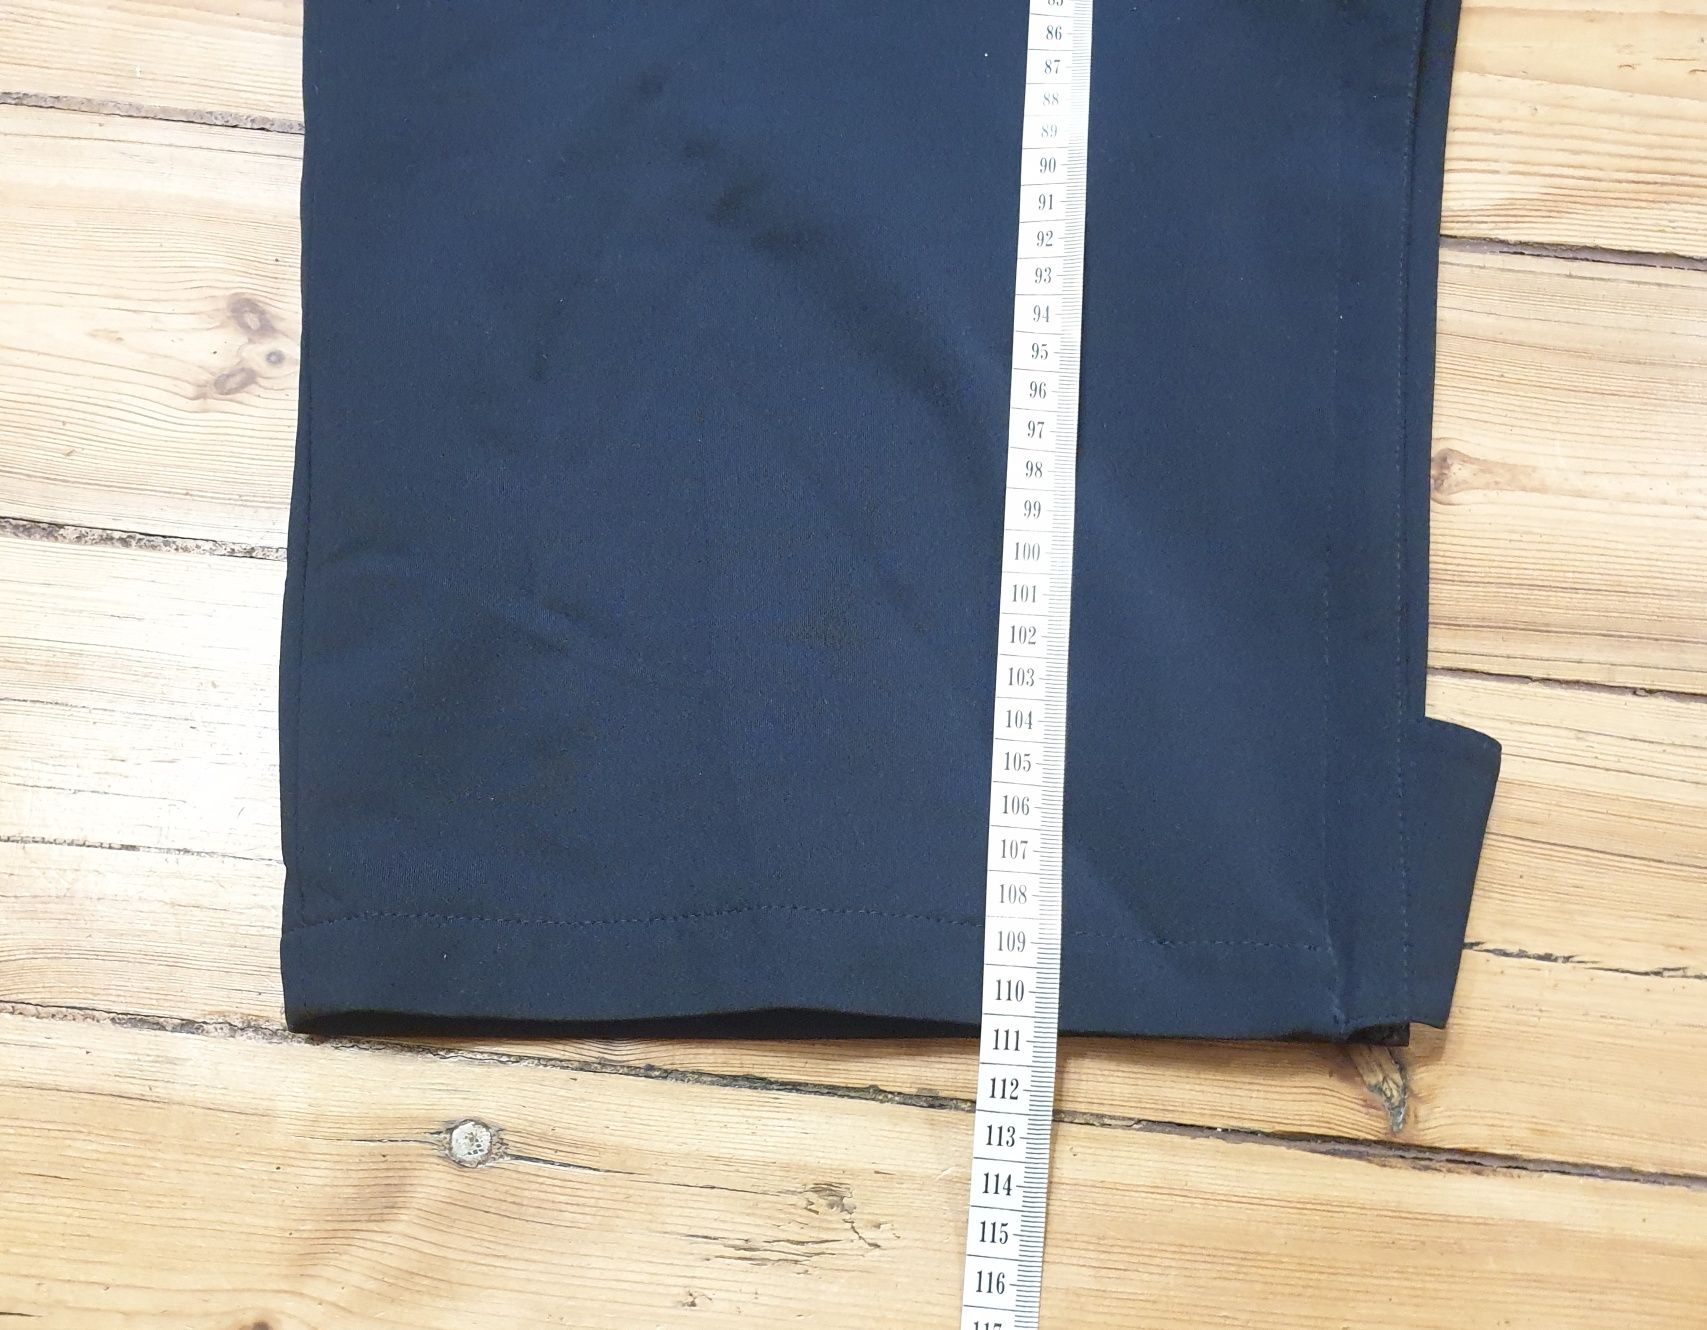 Męskie spodnie dresowe na podszewce Trigema rozmiar xxxl